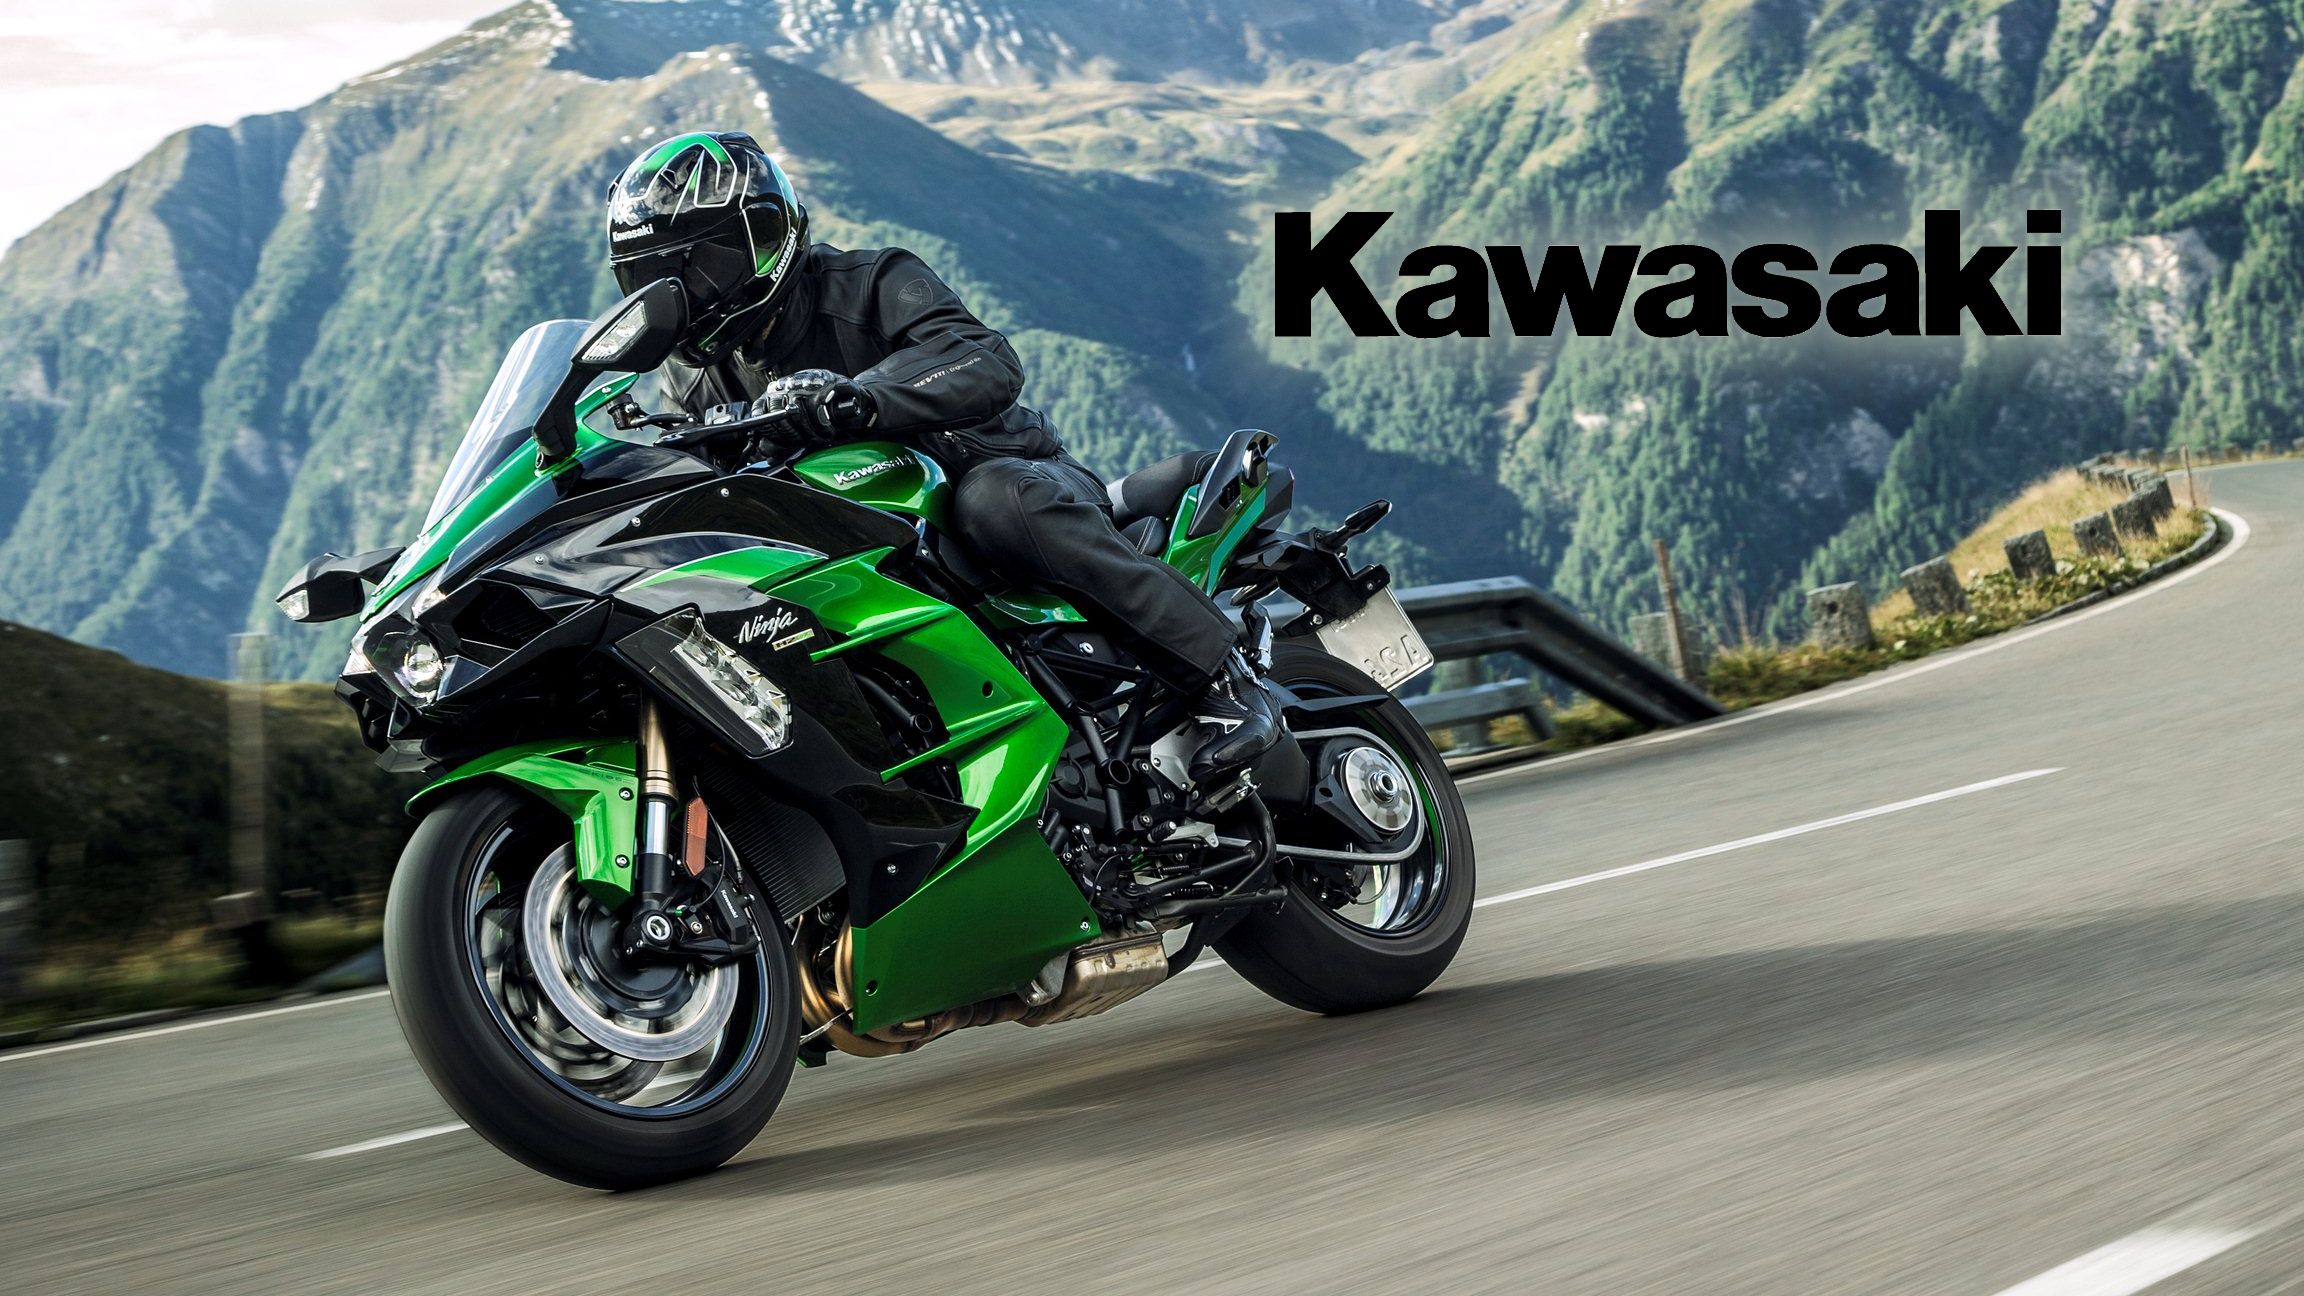 2018 - 2019 Kawasaki Ninja H2 SX / H2 SX SE